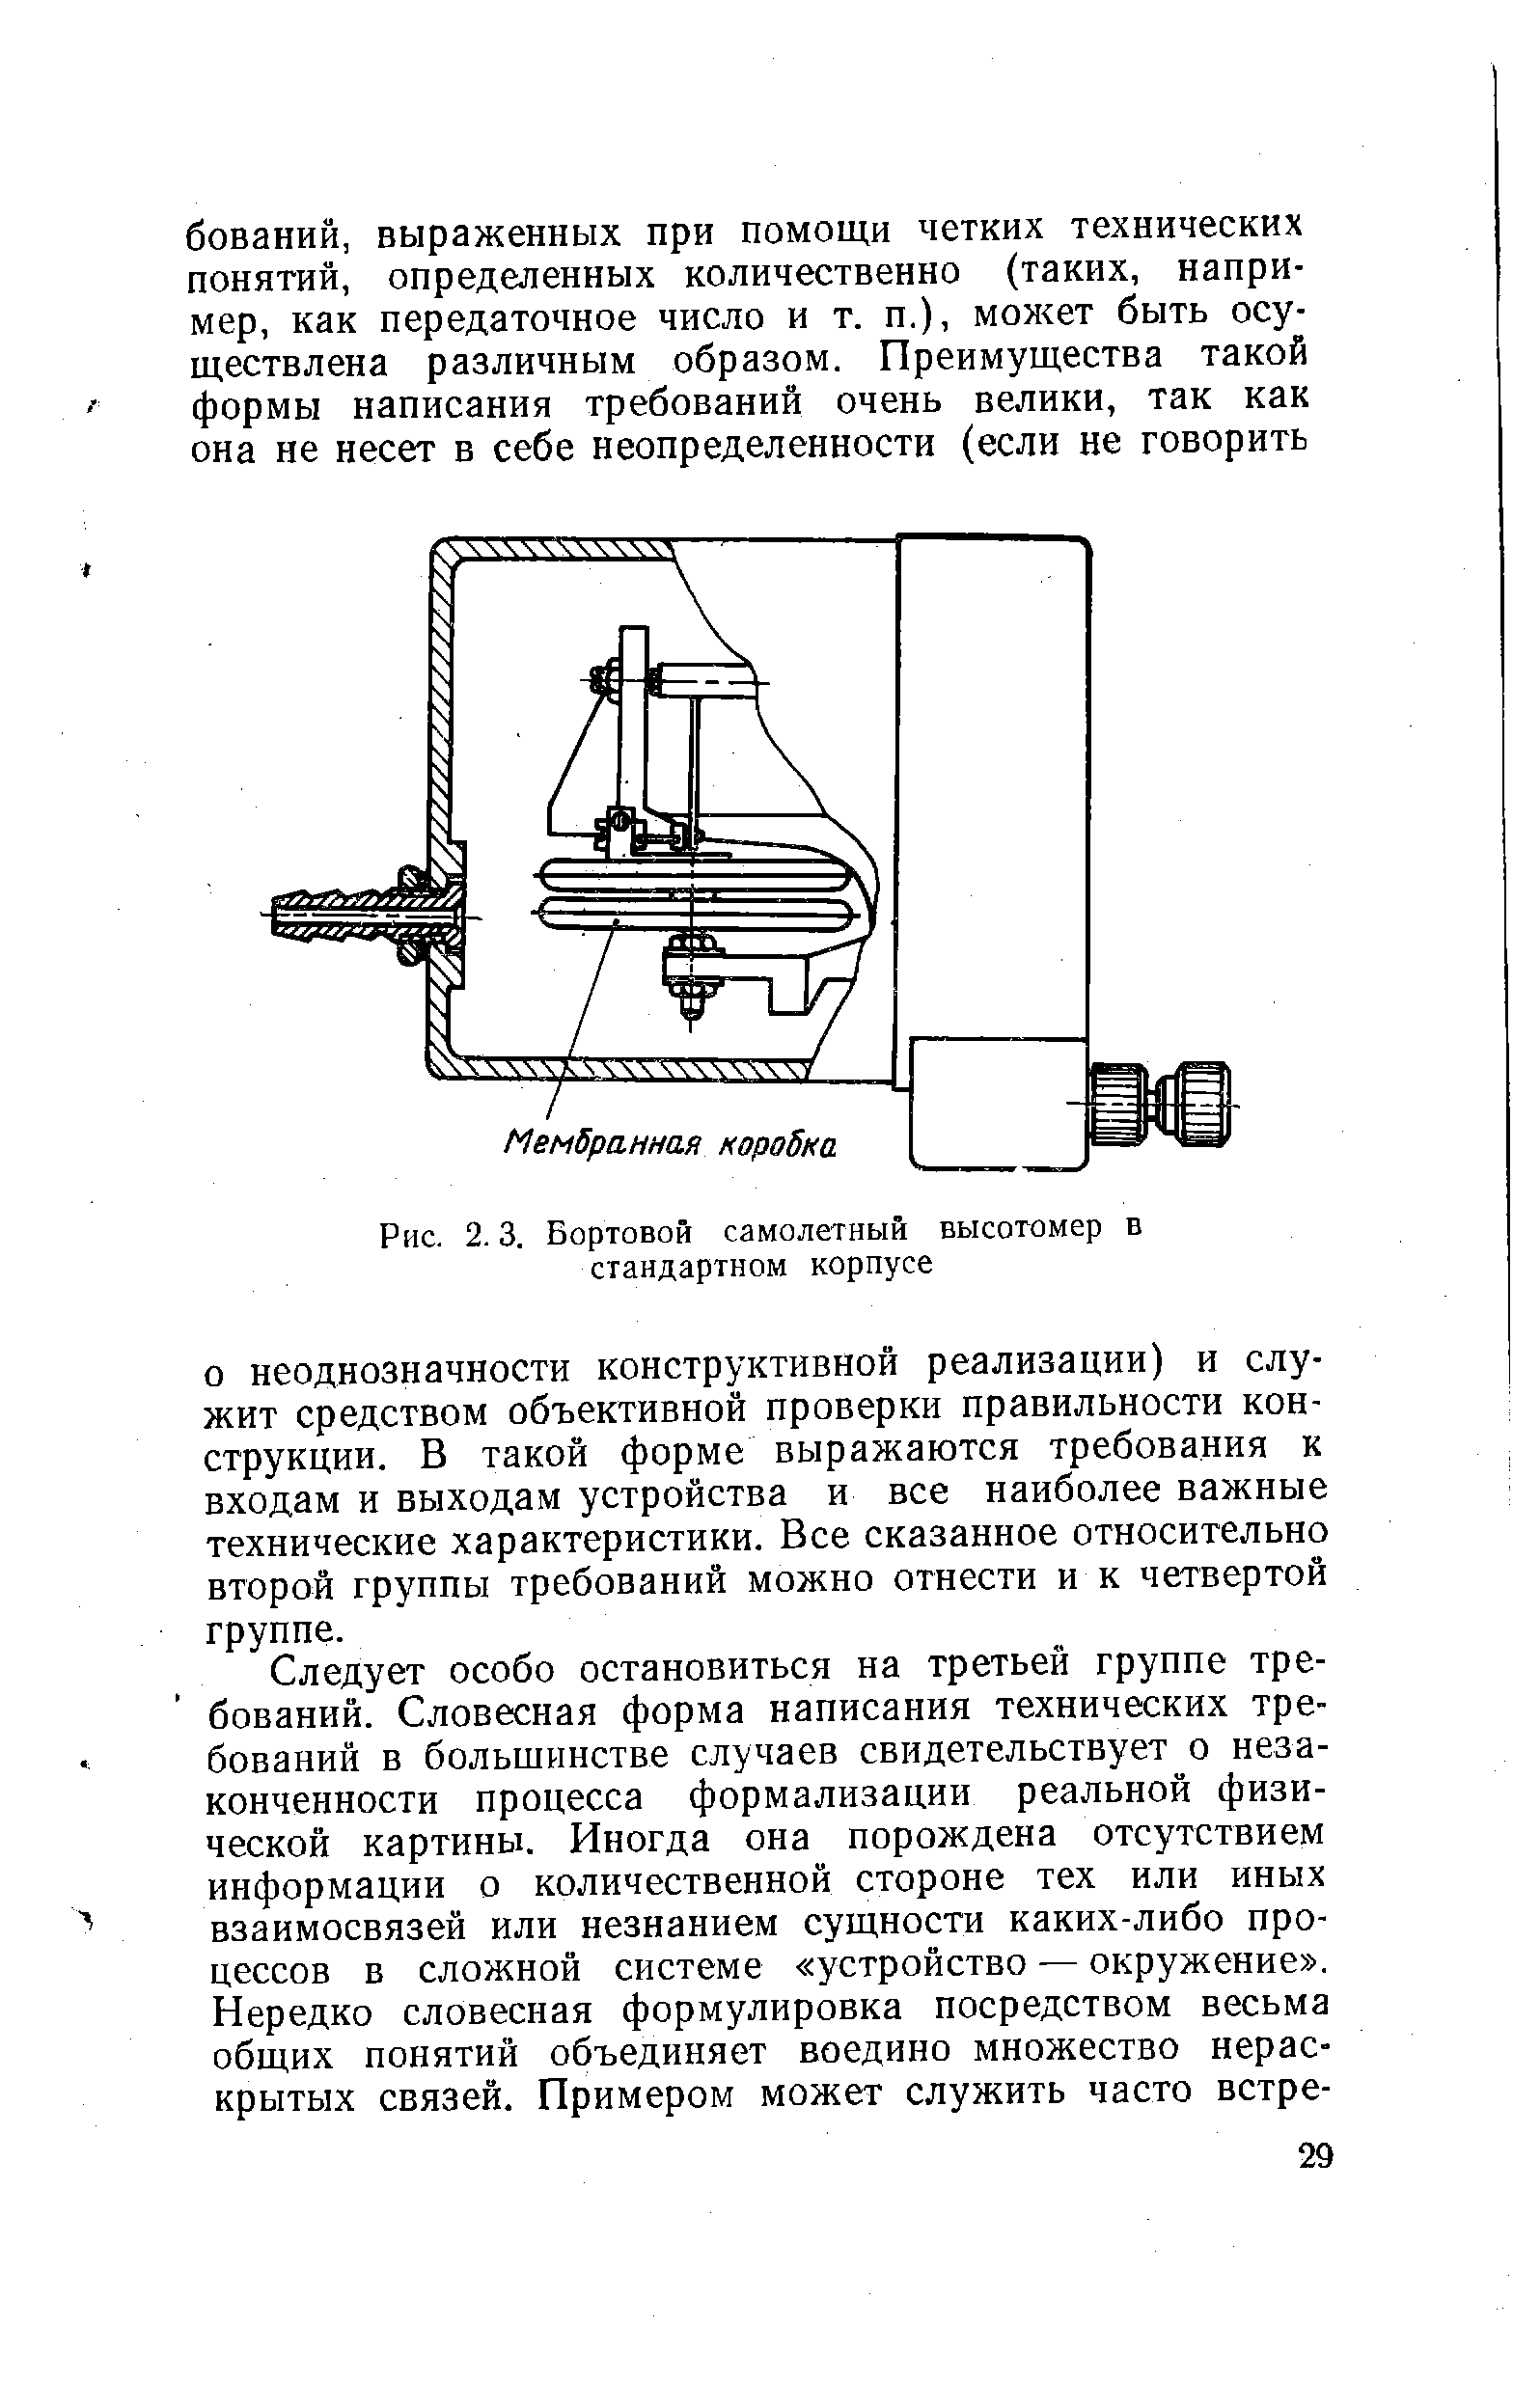 Рис. 2.3. Бортовой самолетный высотомер в стандартном корпусе
